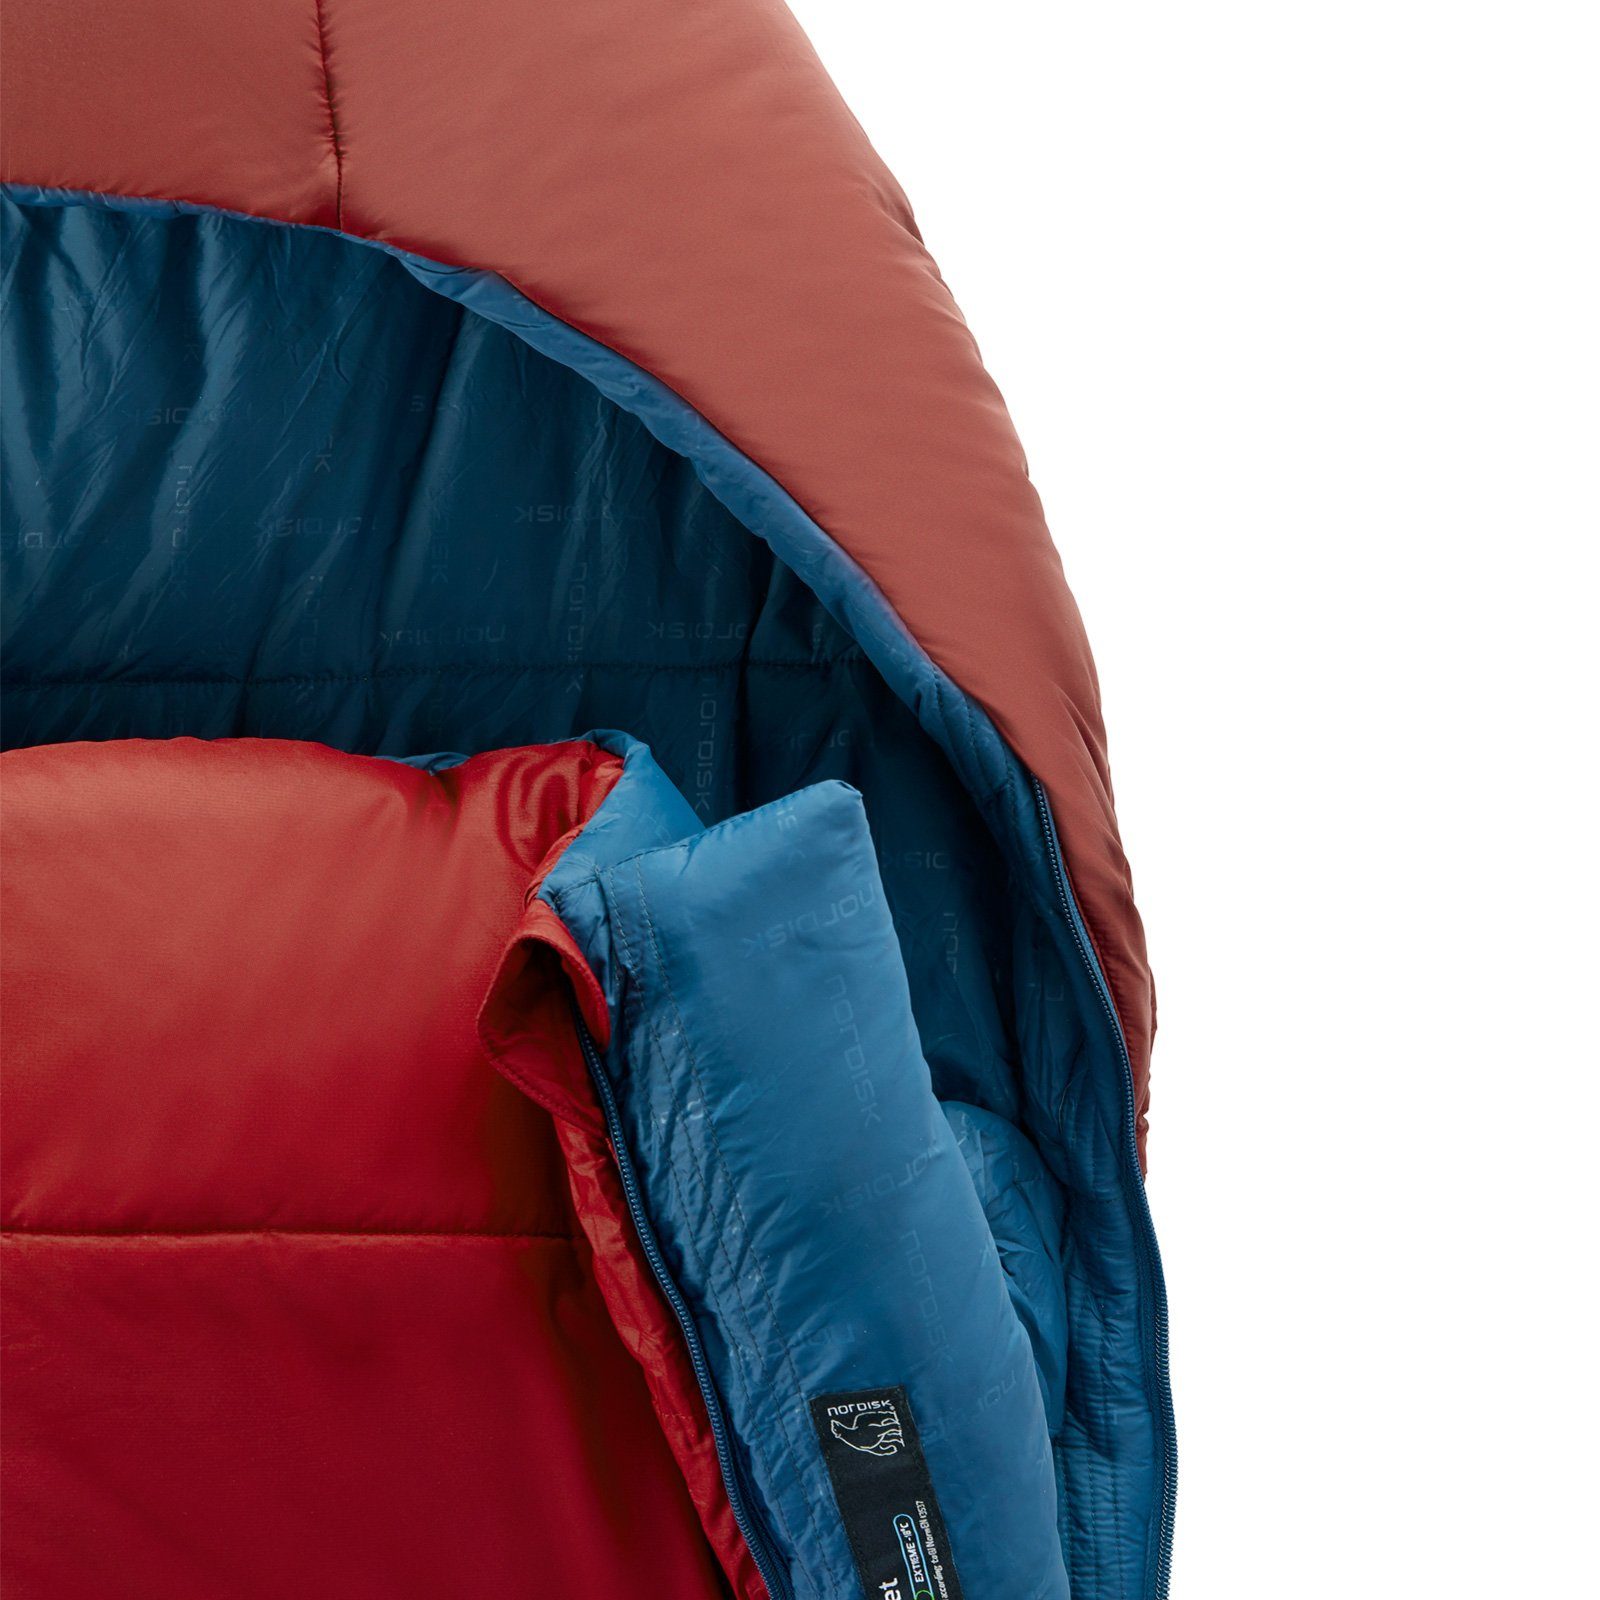 Deckenschlafsack Jahreszeiten Puk -2° Lang 3 -20°C Deckenschlafsack Outdoor, XL Nordisk Schlafsack